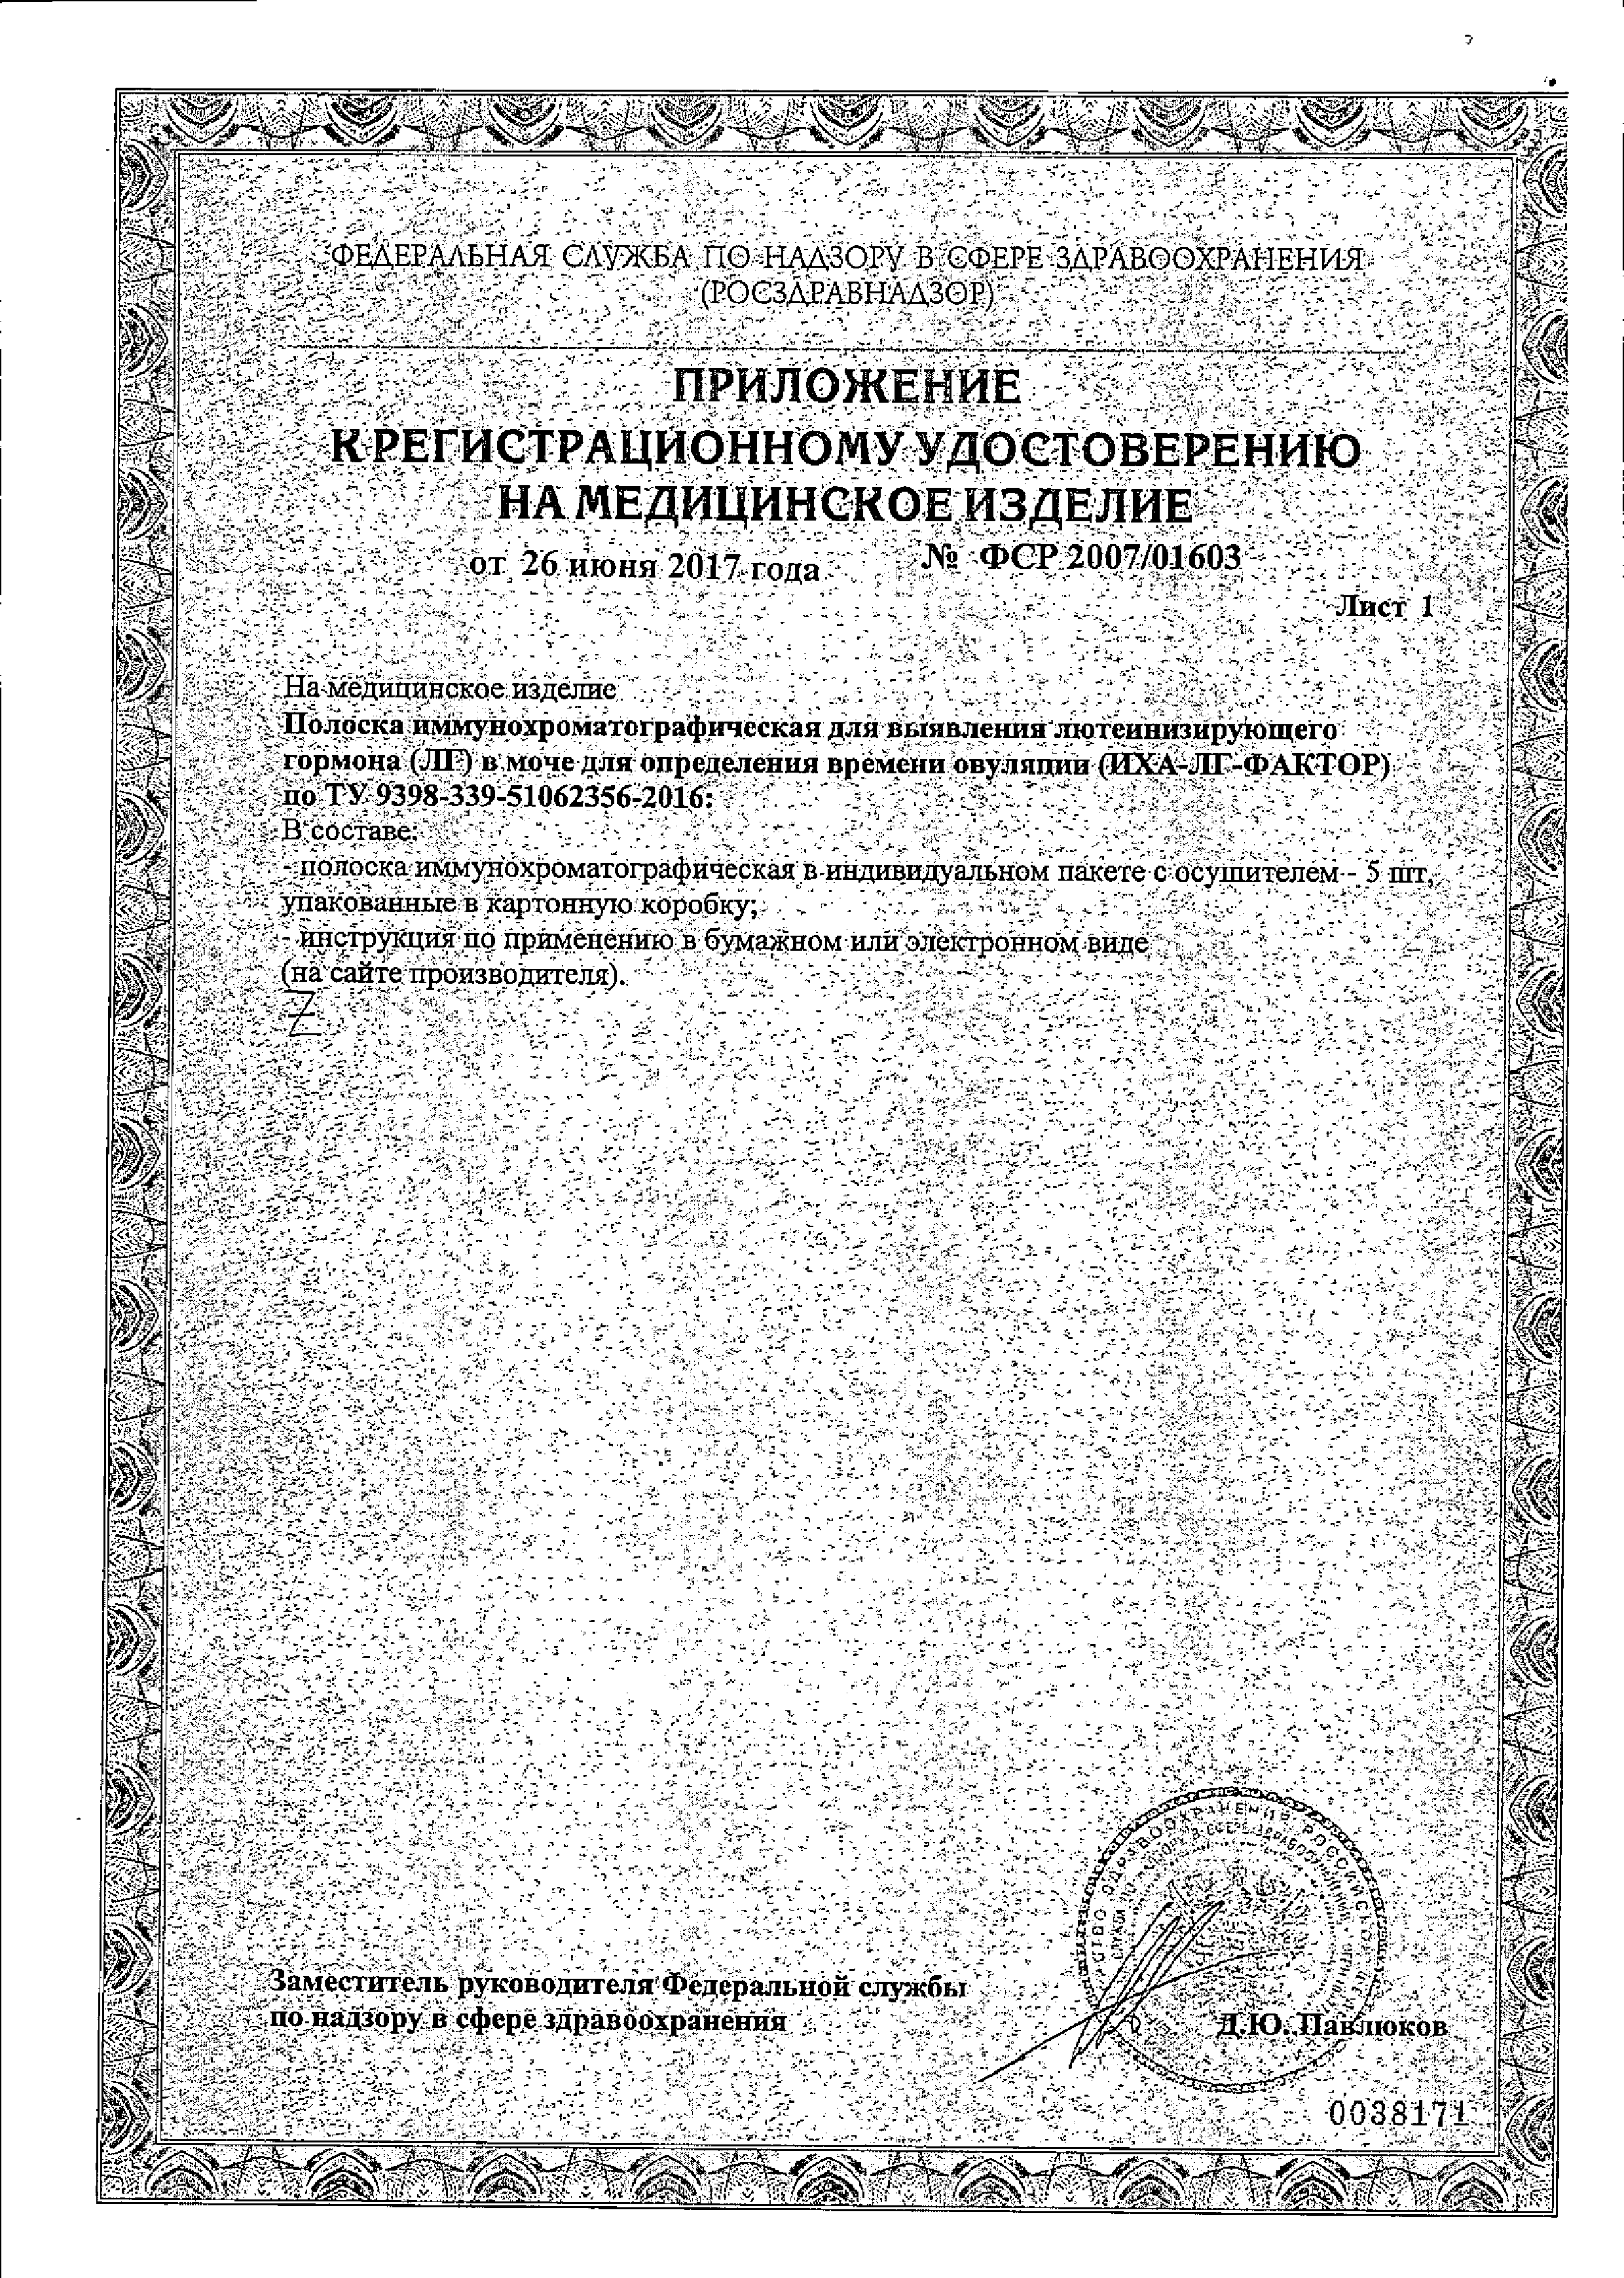 Тест на овуляцию ИХА-ЛГ-ФАКТОР сертификат